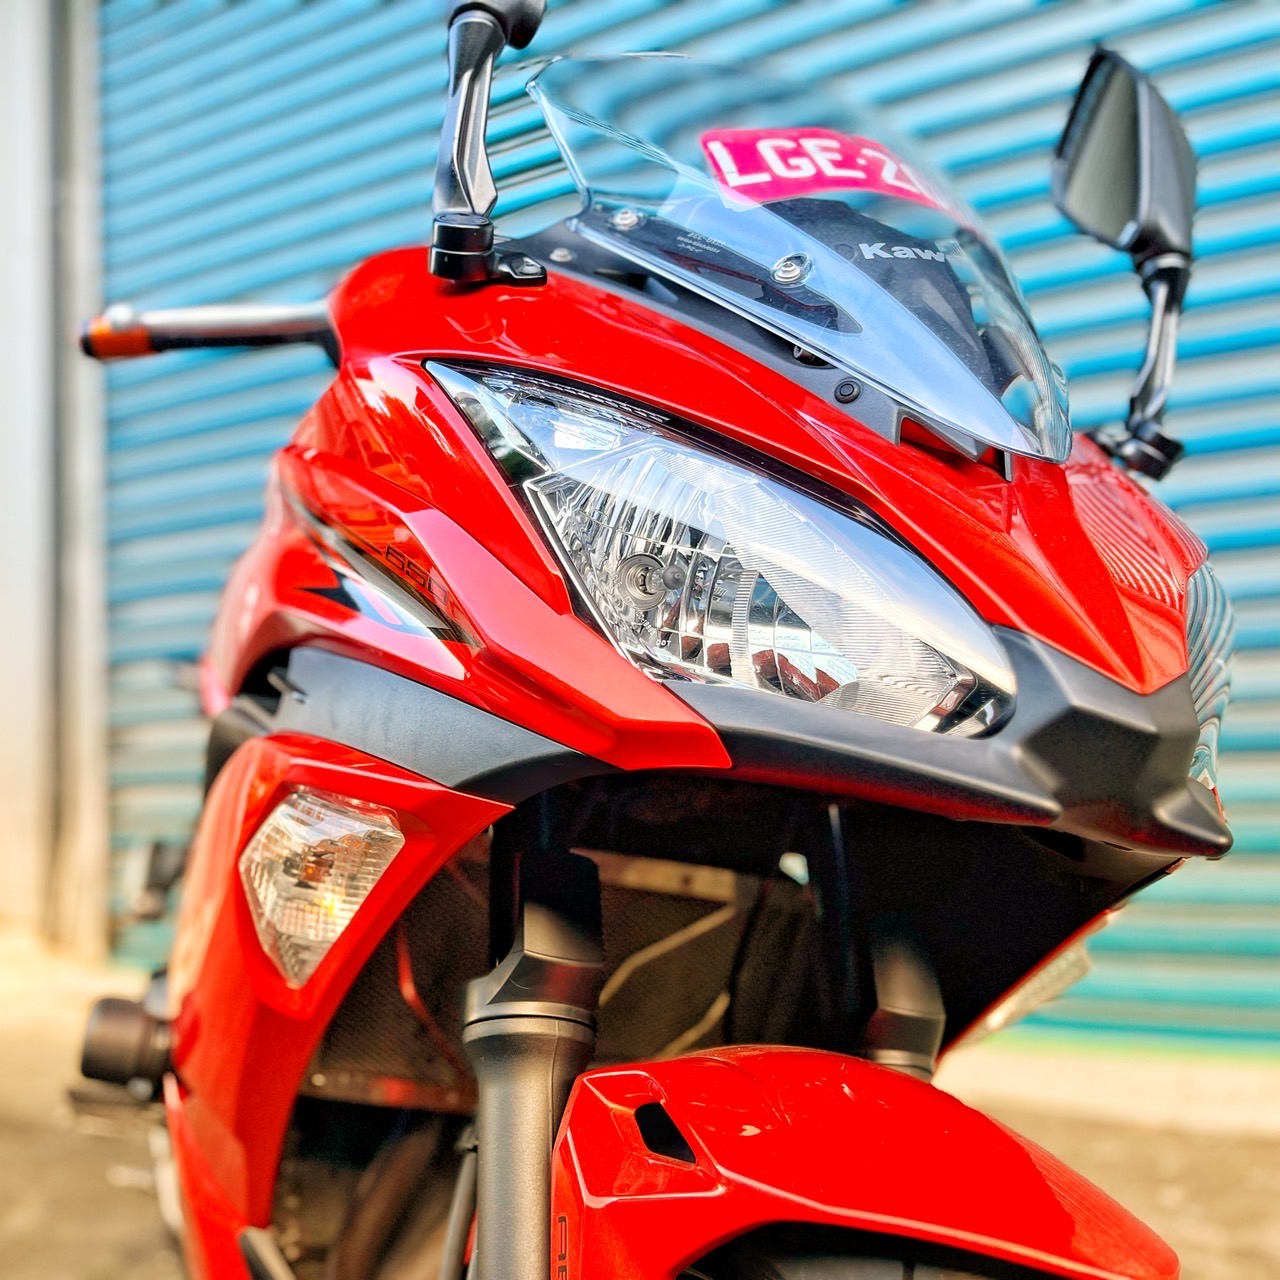 【小資族二手重機買賣】KAWASAKI NINJA650 - 「Webike-摩托車市」 里程保證 無摔車無事故 小資族二手重機買賣